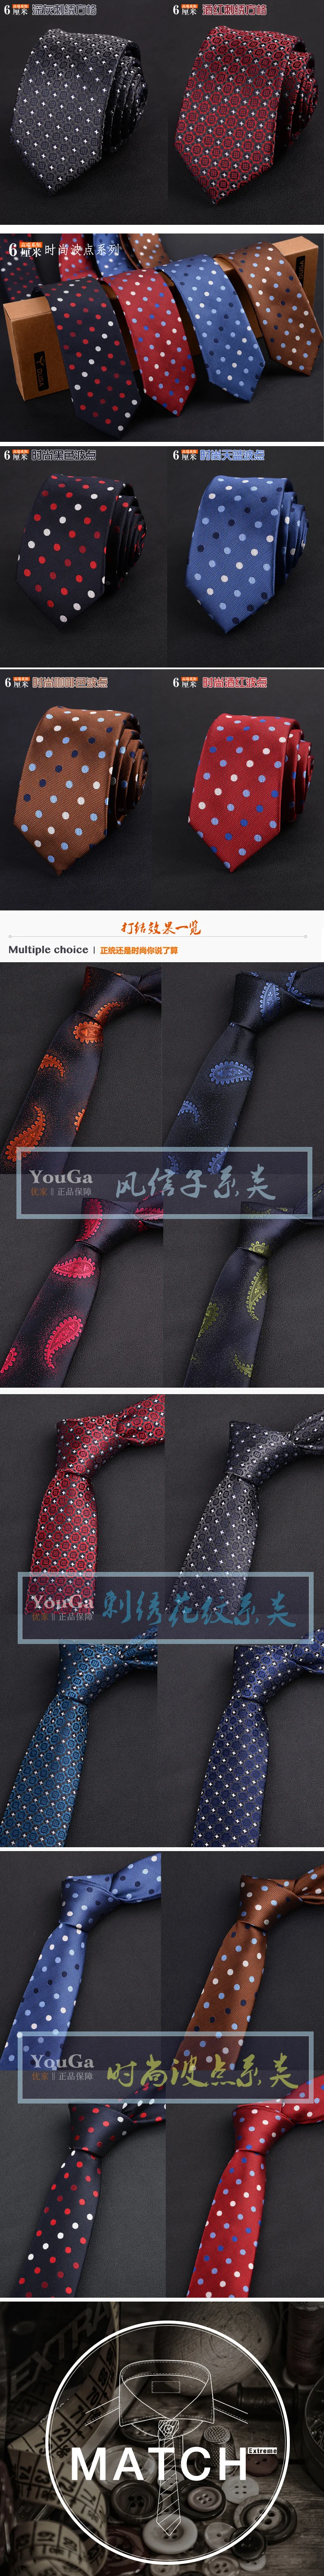 Новинка 2017 горячие мужчины корейской узкий версии галстук Повседневная 6 см nano водонепроницаемый Жених Бизнес корейский галстук в